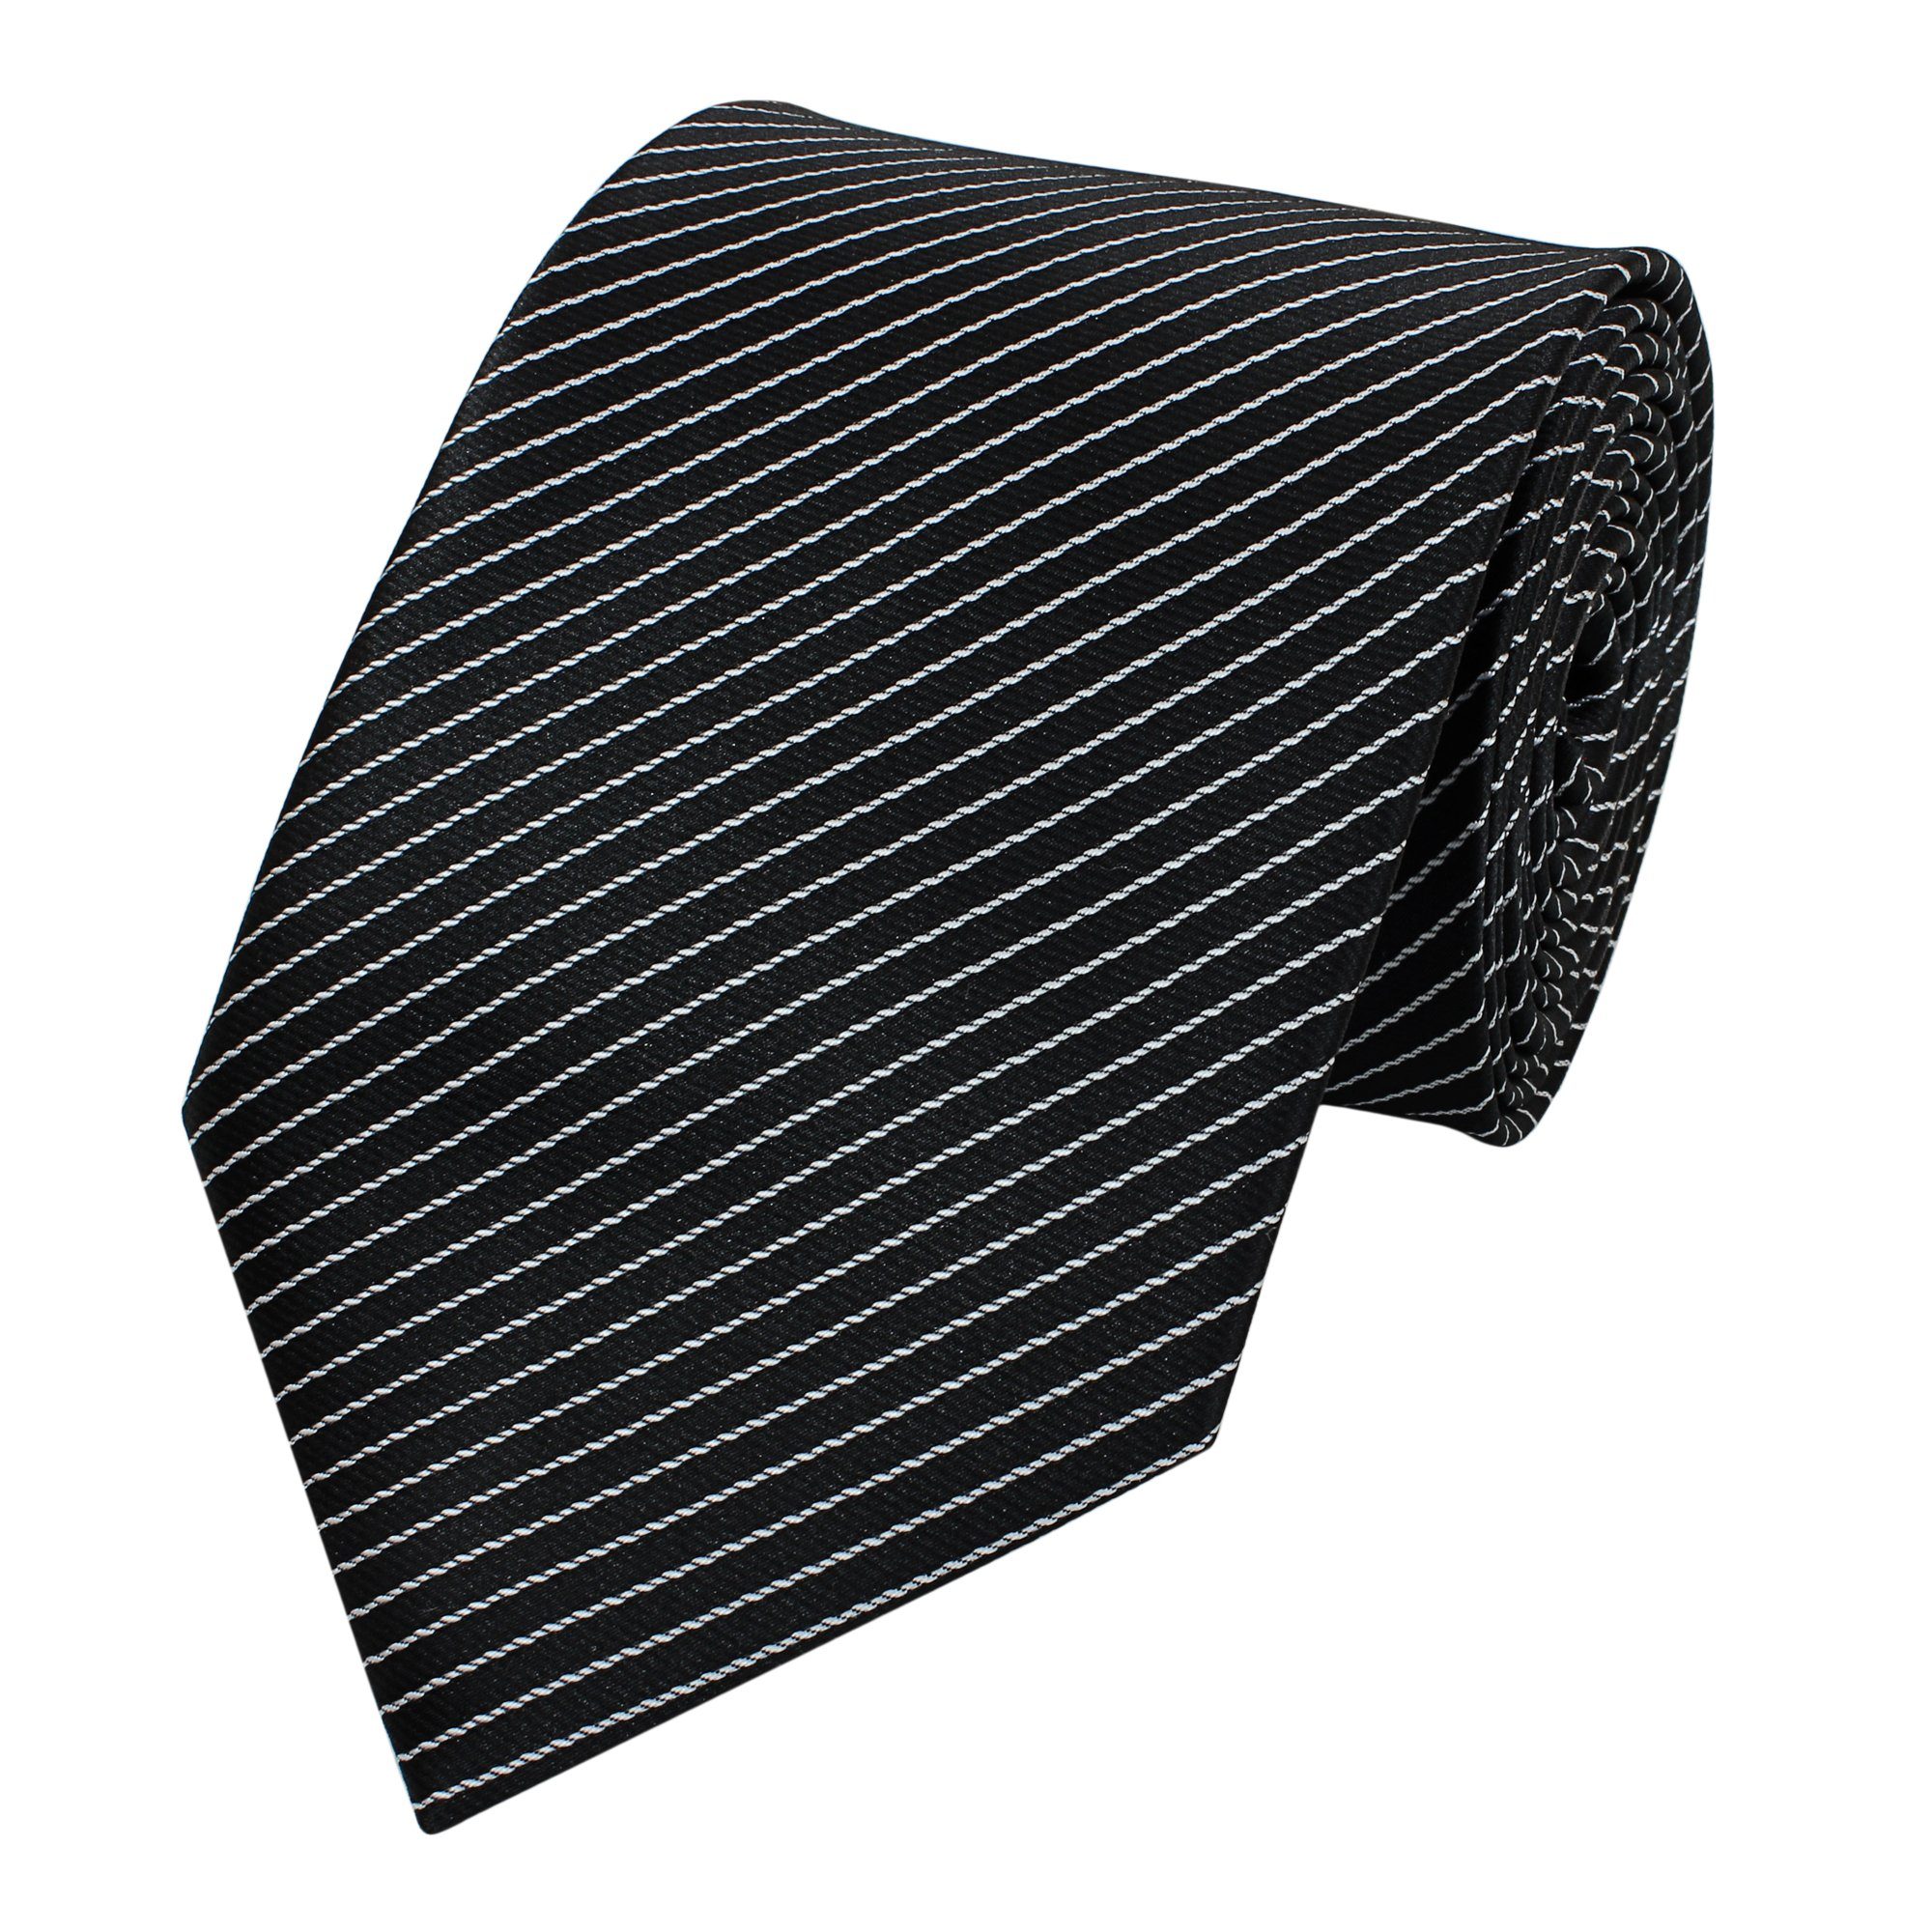 6cm Breite (6cm), - in 8cm Krawatte Fabio Herren Krawatte gestreifte (ohne Box, Tie oder Streifen Gestreift) Farini weiße Schmal Streifen mit Schwarz/feine